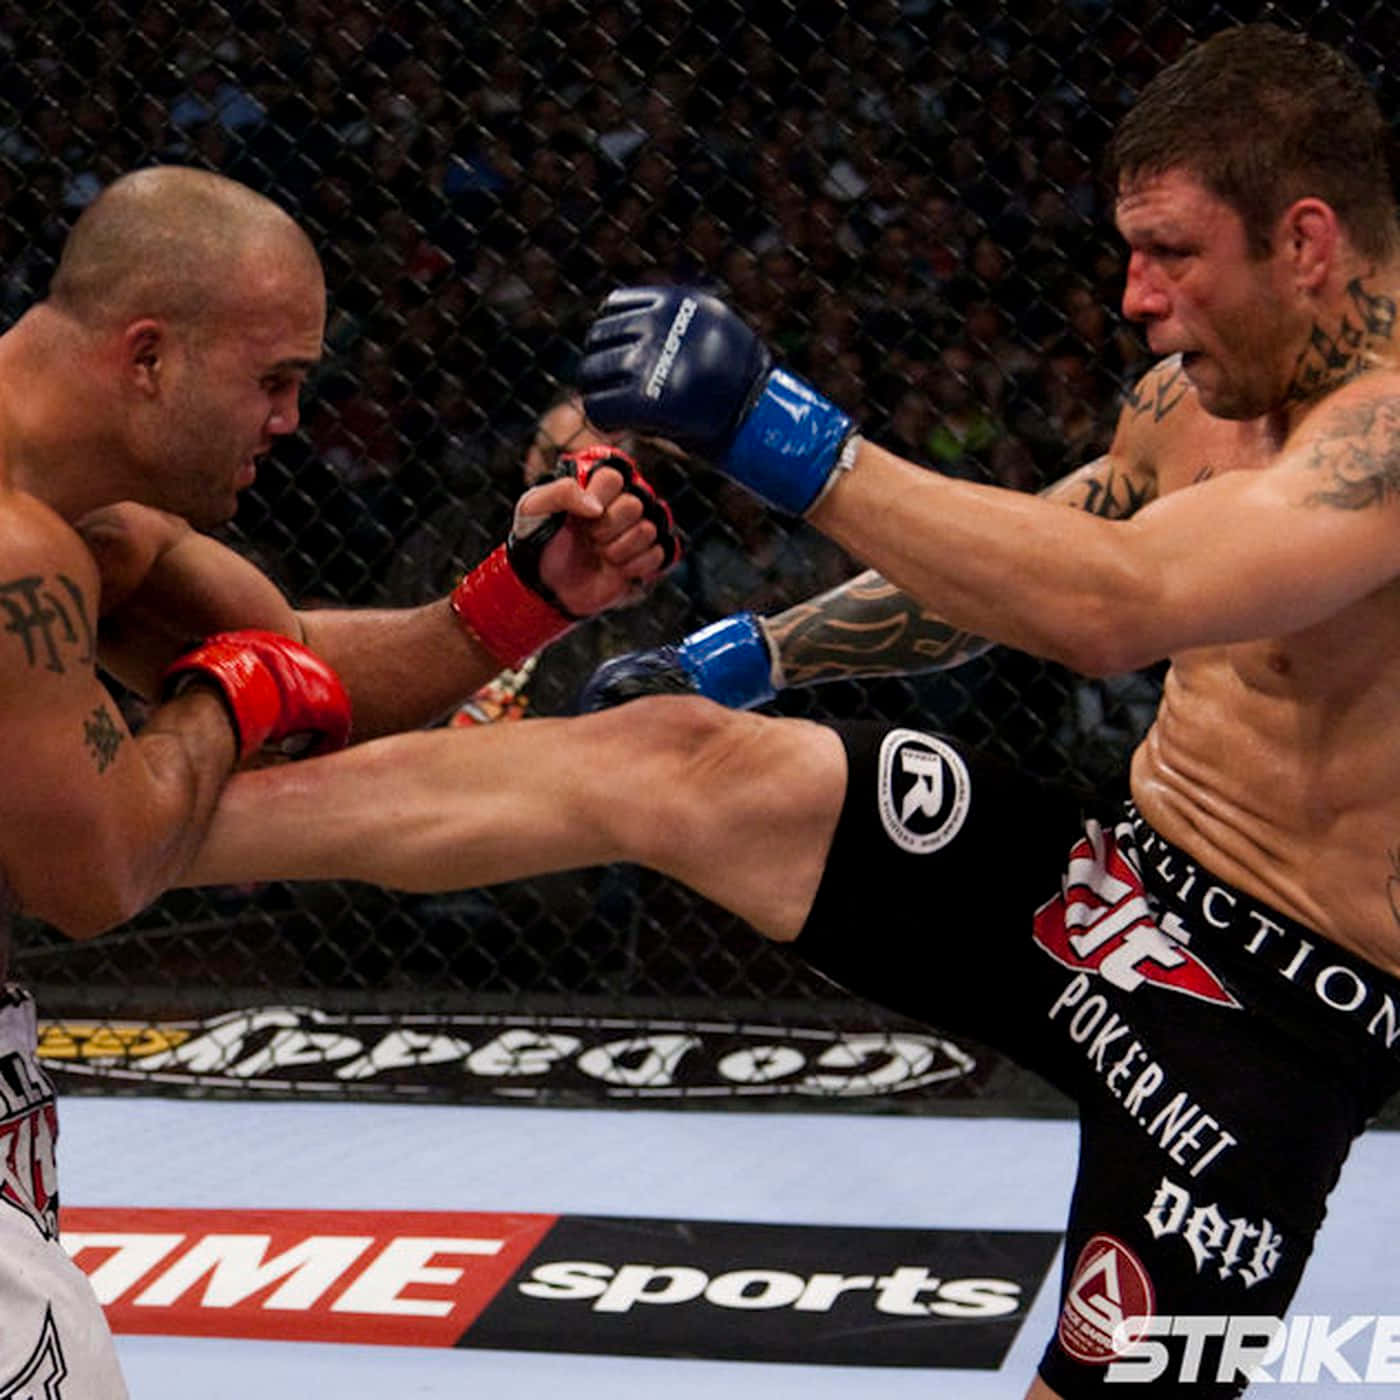 Brasiliansk UFC-spiller Renato Sobral og Dan Henderson Strikeforce-begivenhed Tapet Wallpaper